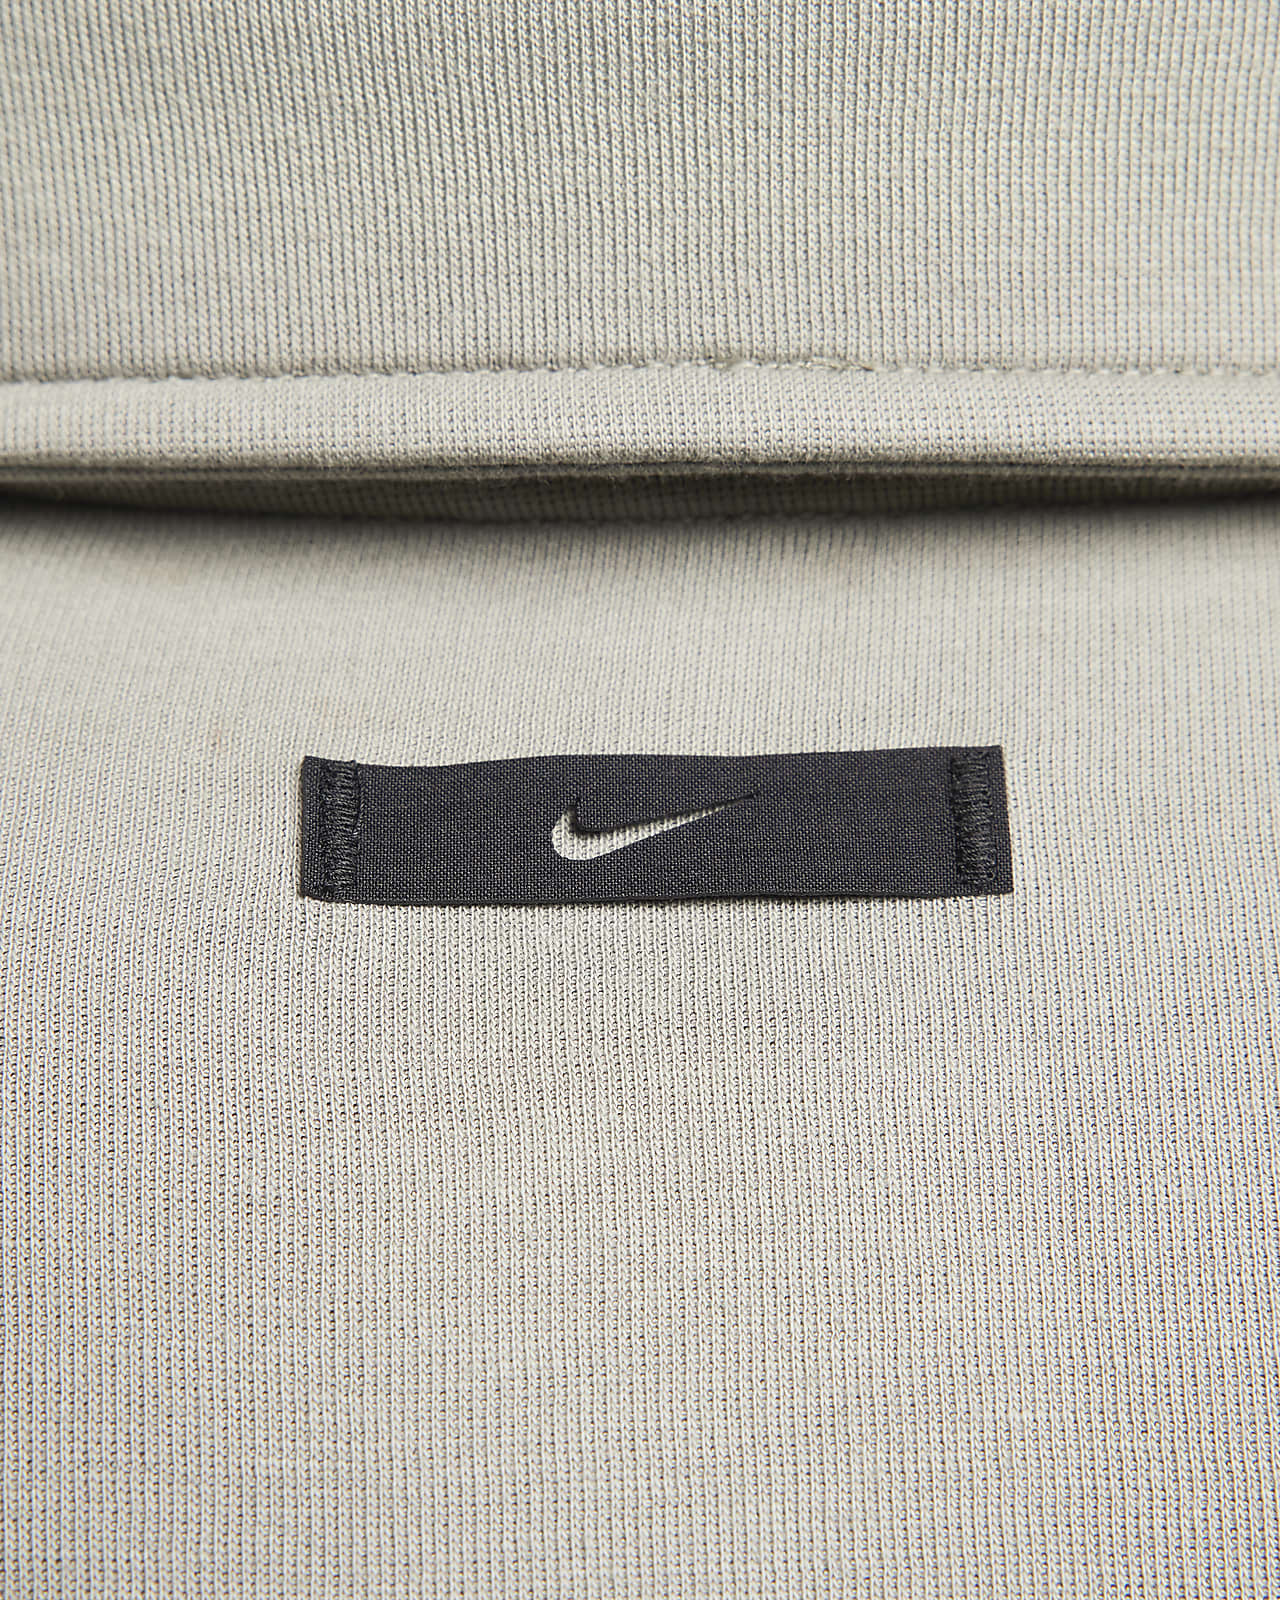 Nike Tech Fleece Re-imagined Men's Fleece Trousers. Nike LU